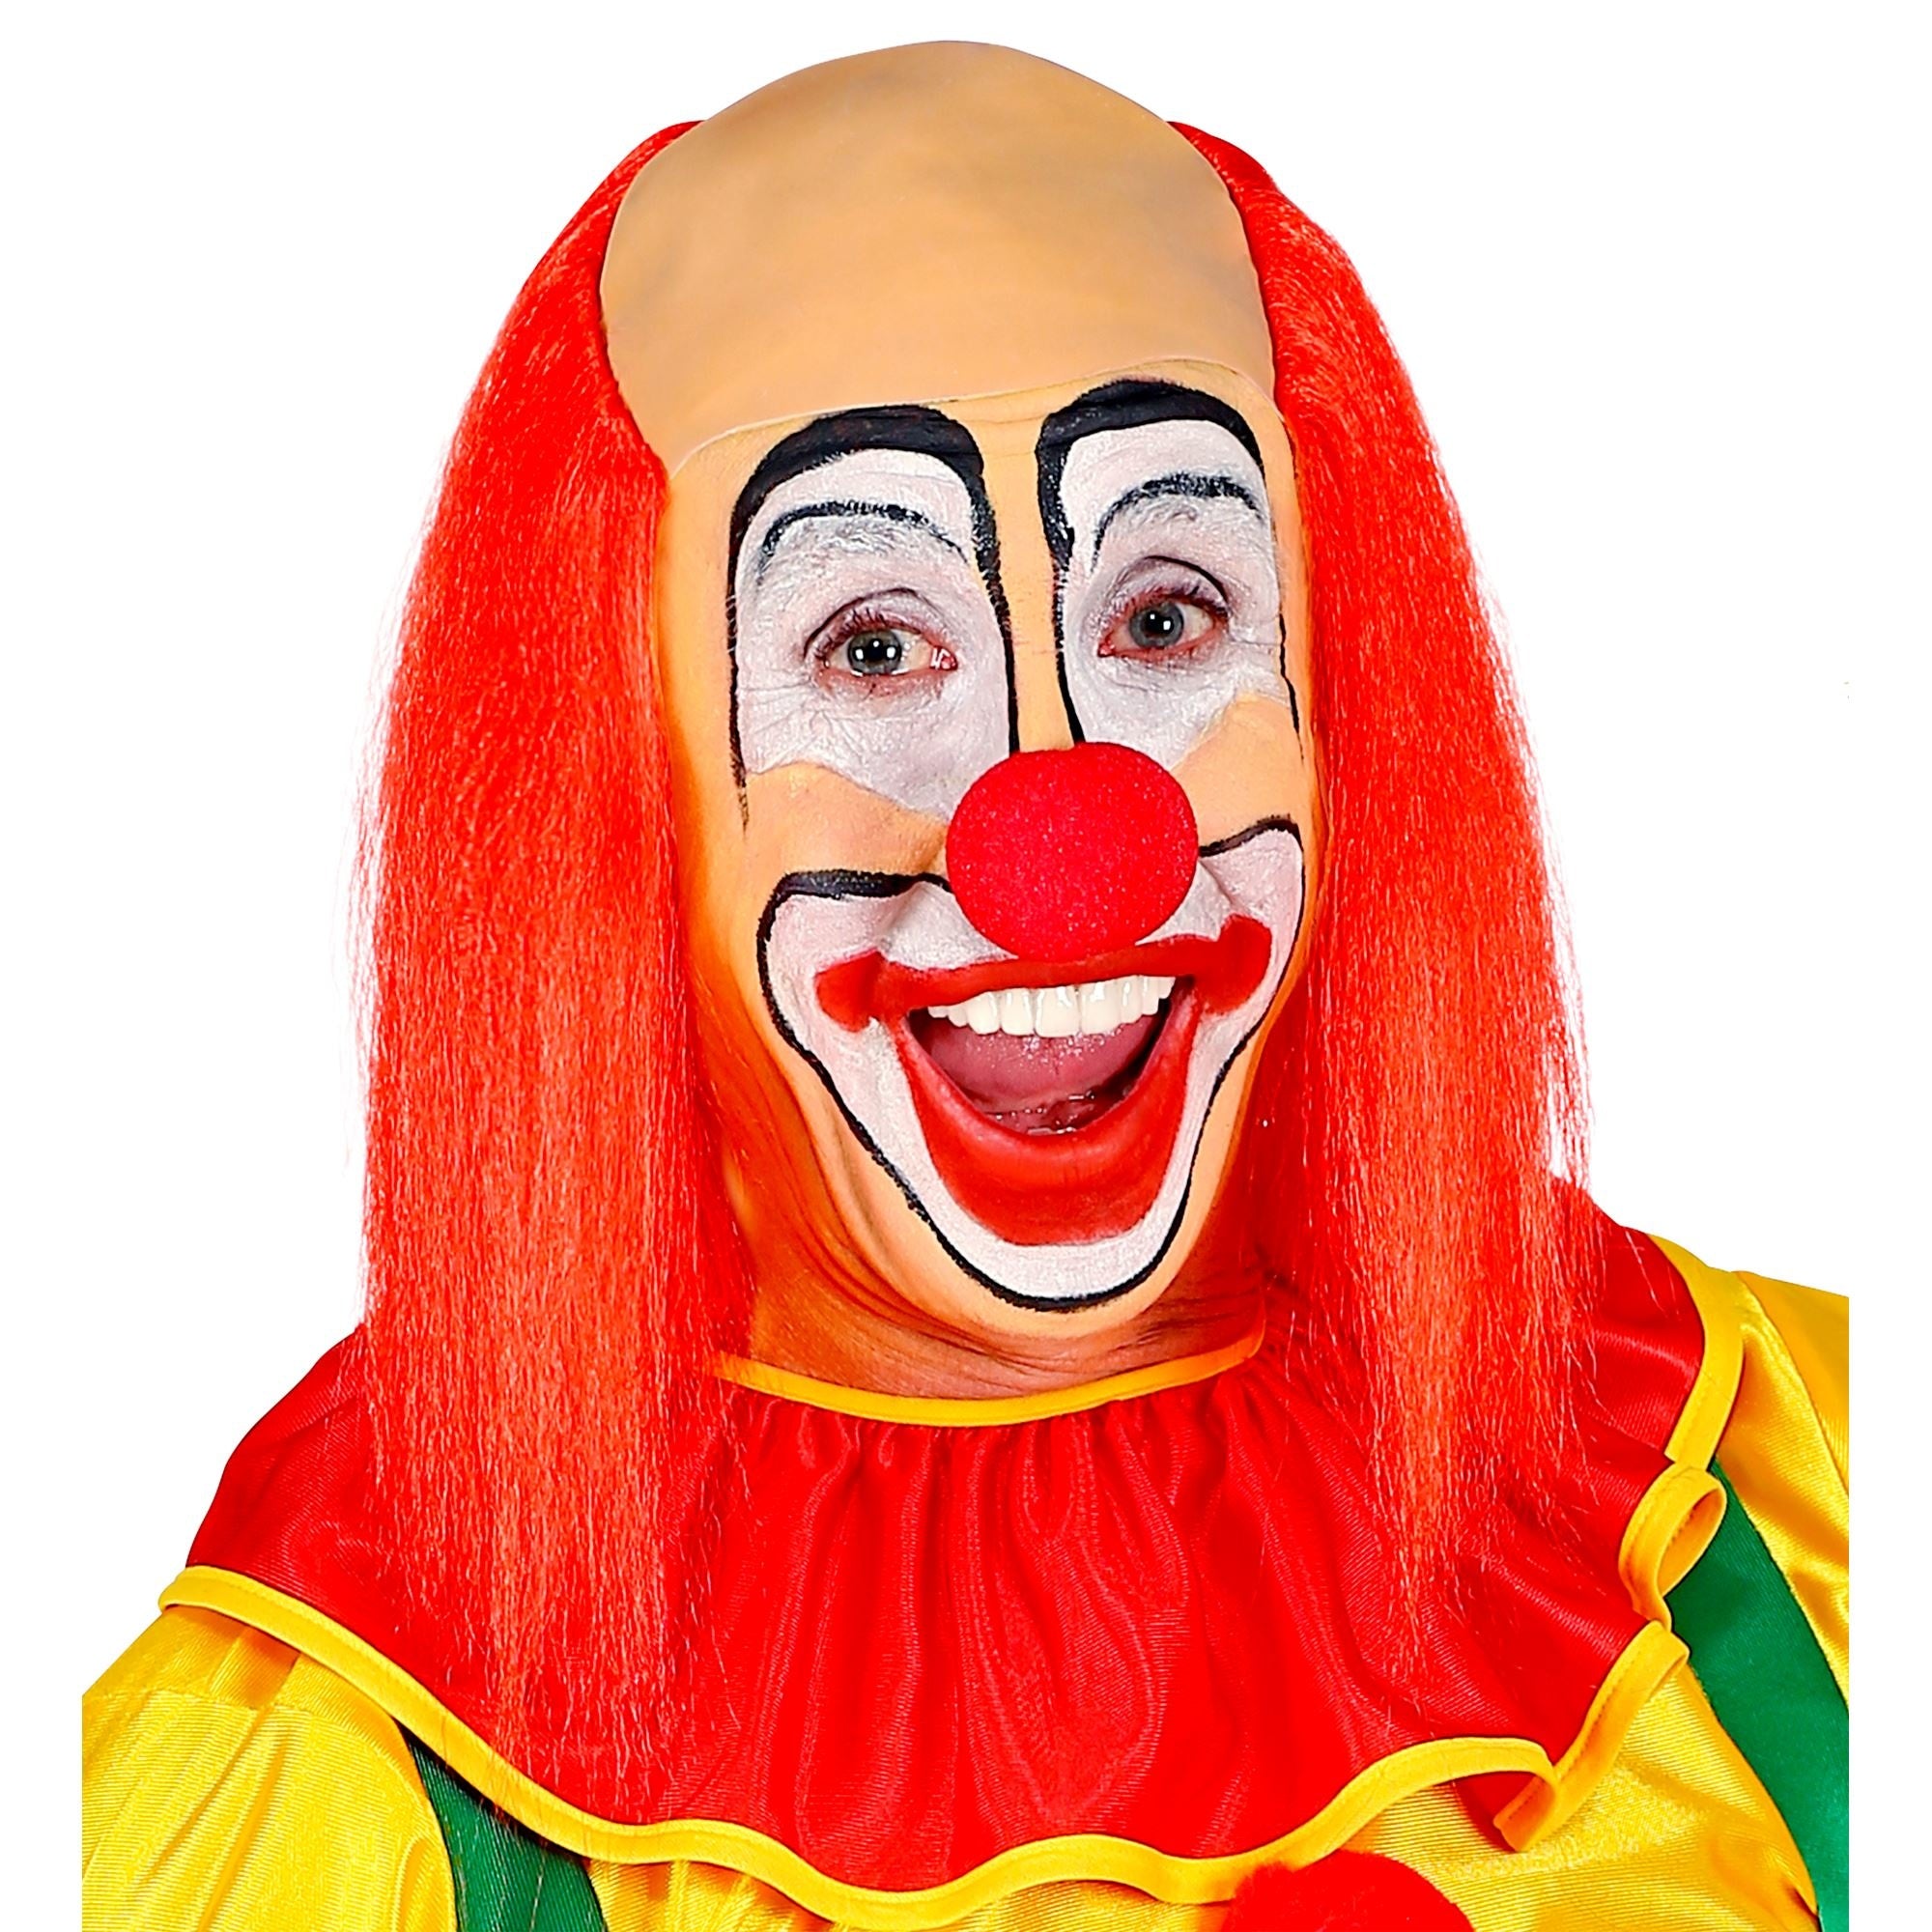 Kaal hoofd pruik clown met rood haar